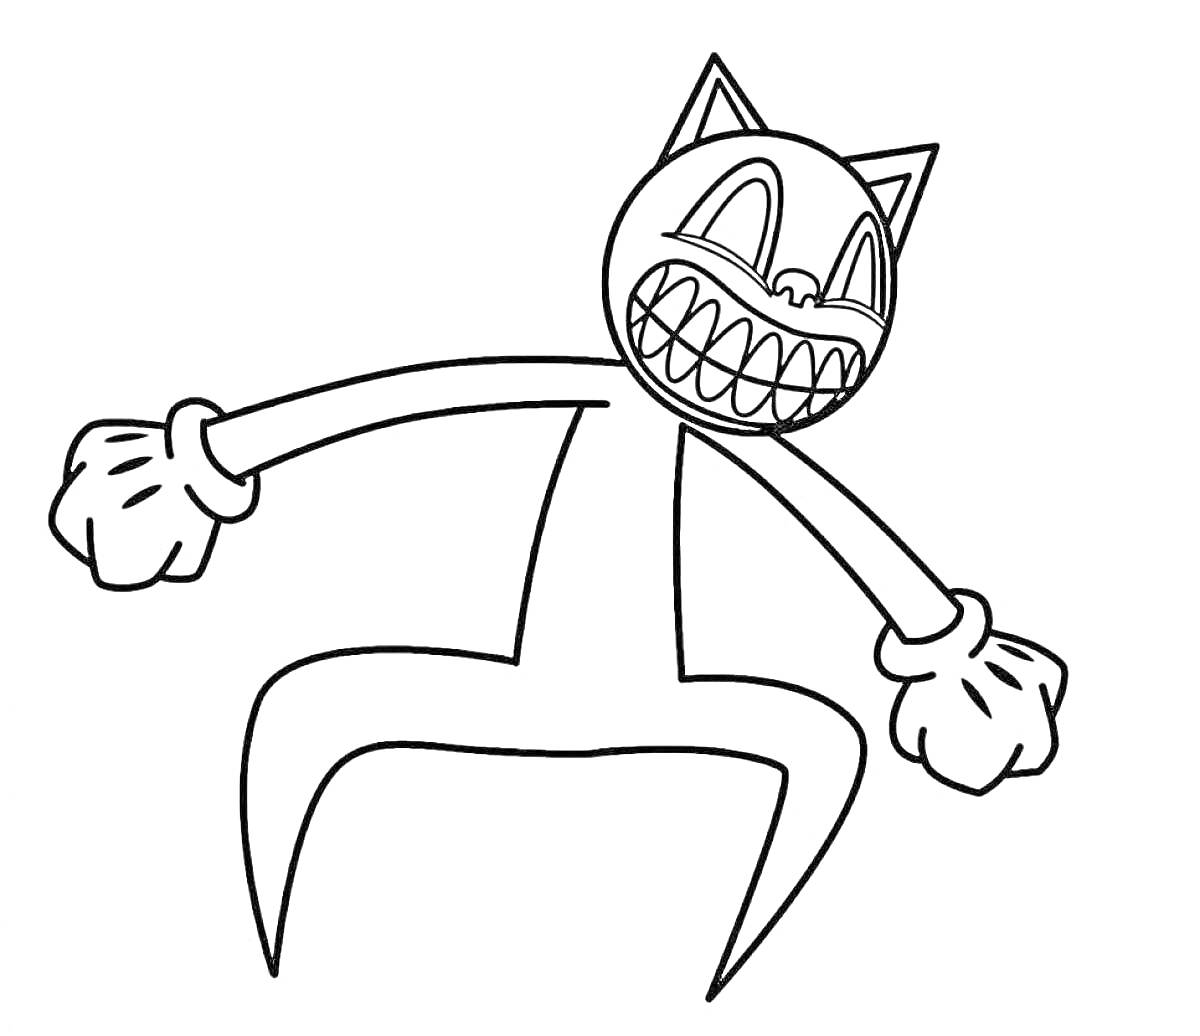 Картун Кэт с большими зубами, большими глазами и сжатые кулаки